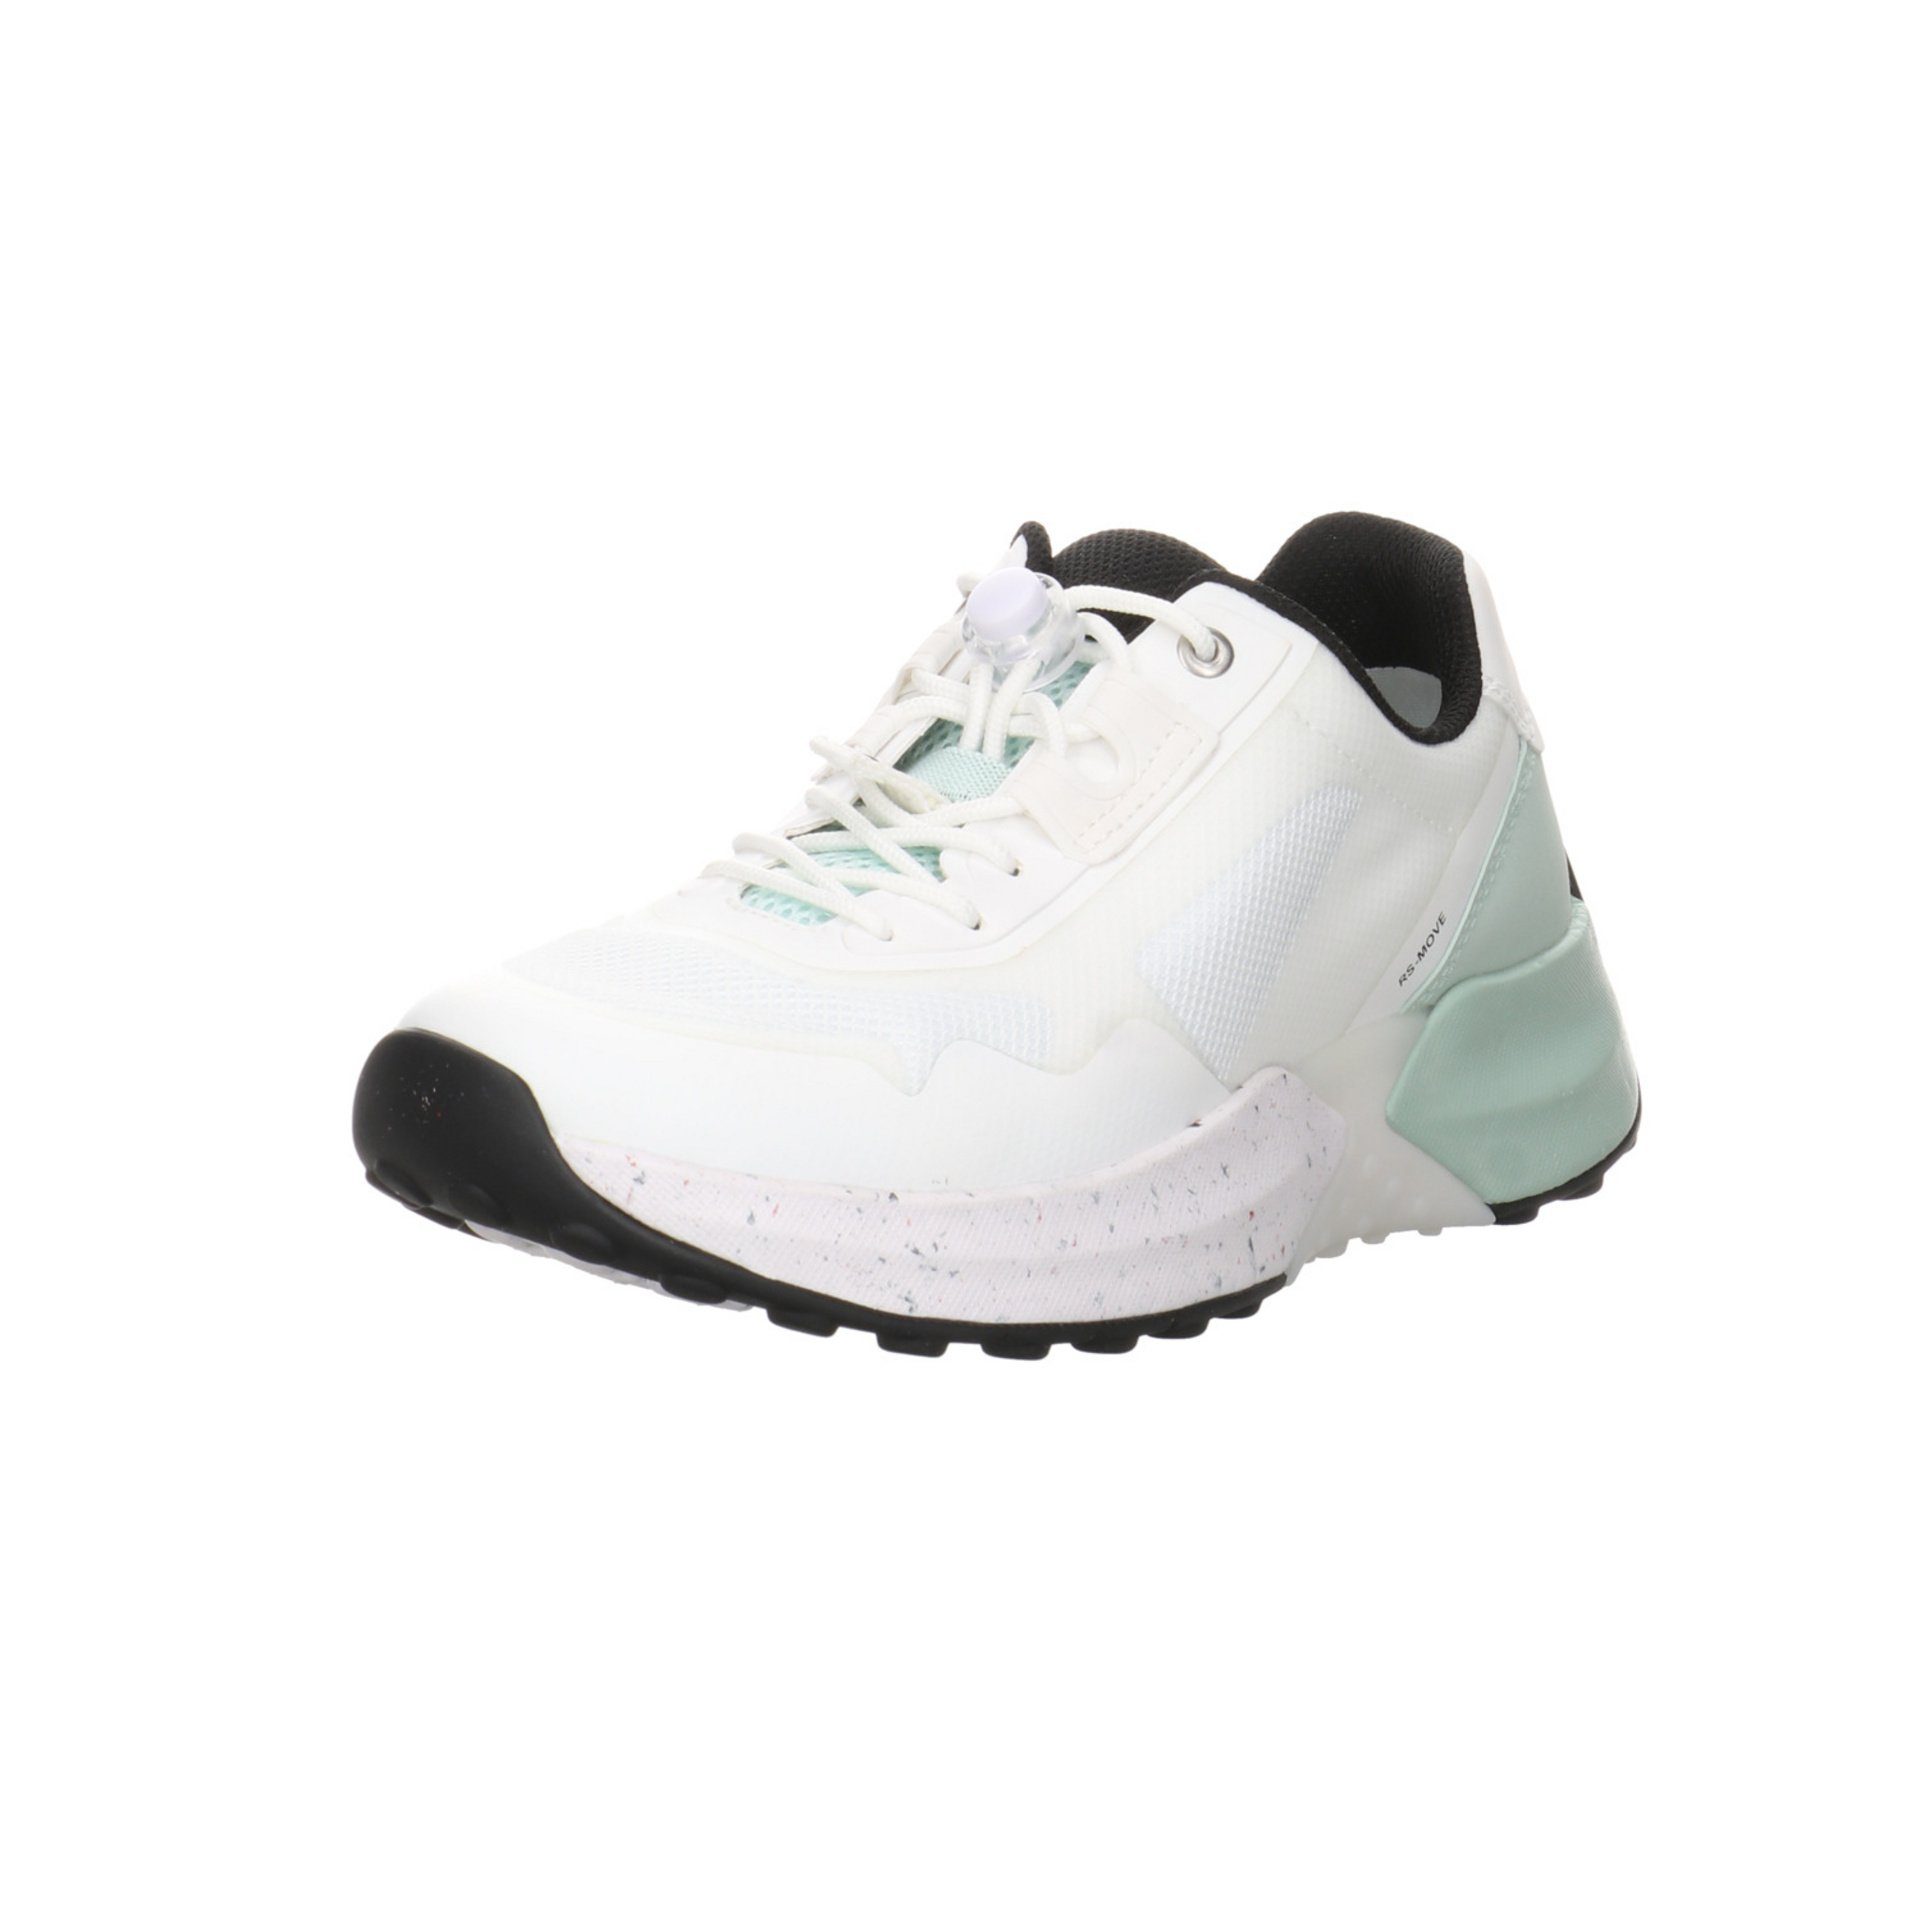 Gabor Damen Slipper Schuhe Rollingsoft Sneaker Slip-On Sneaker Synthetikkombination weiss/mint